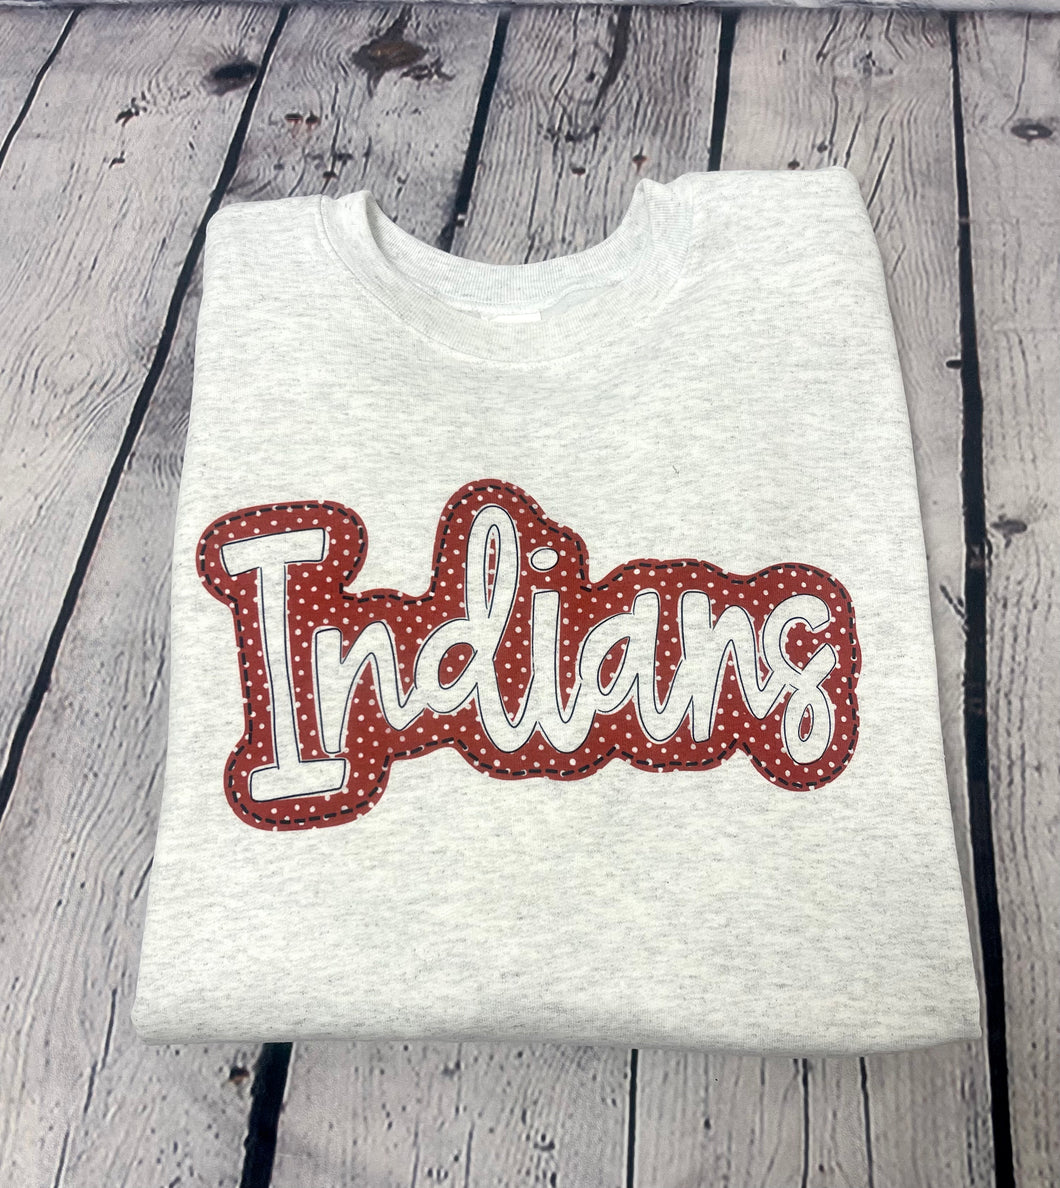 Indians Polka Dot T-Shirt or Sweatshirt